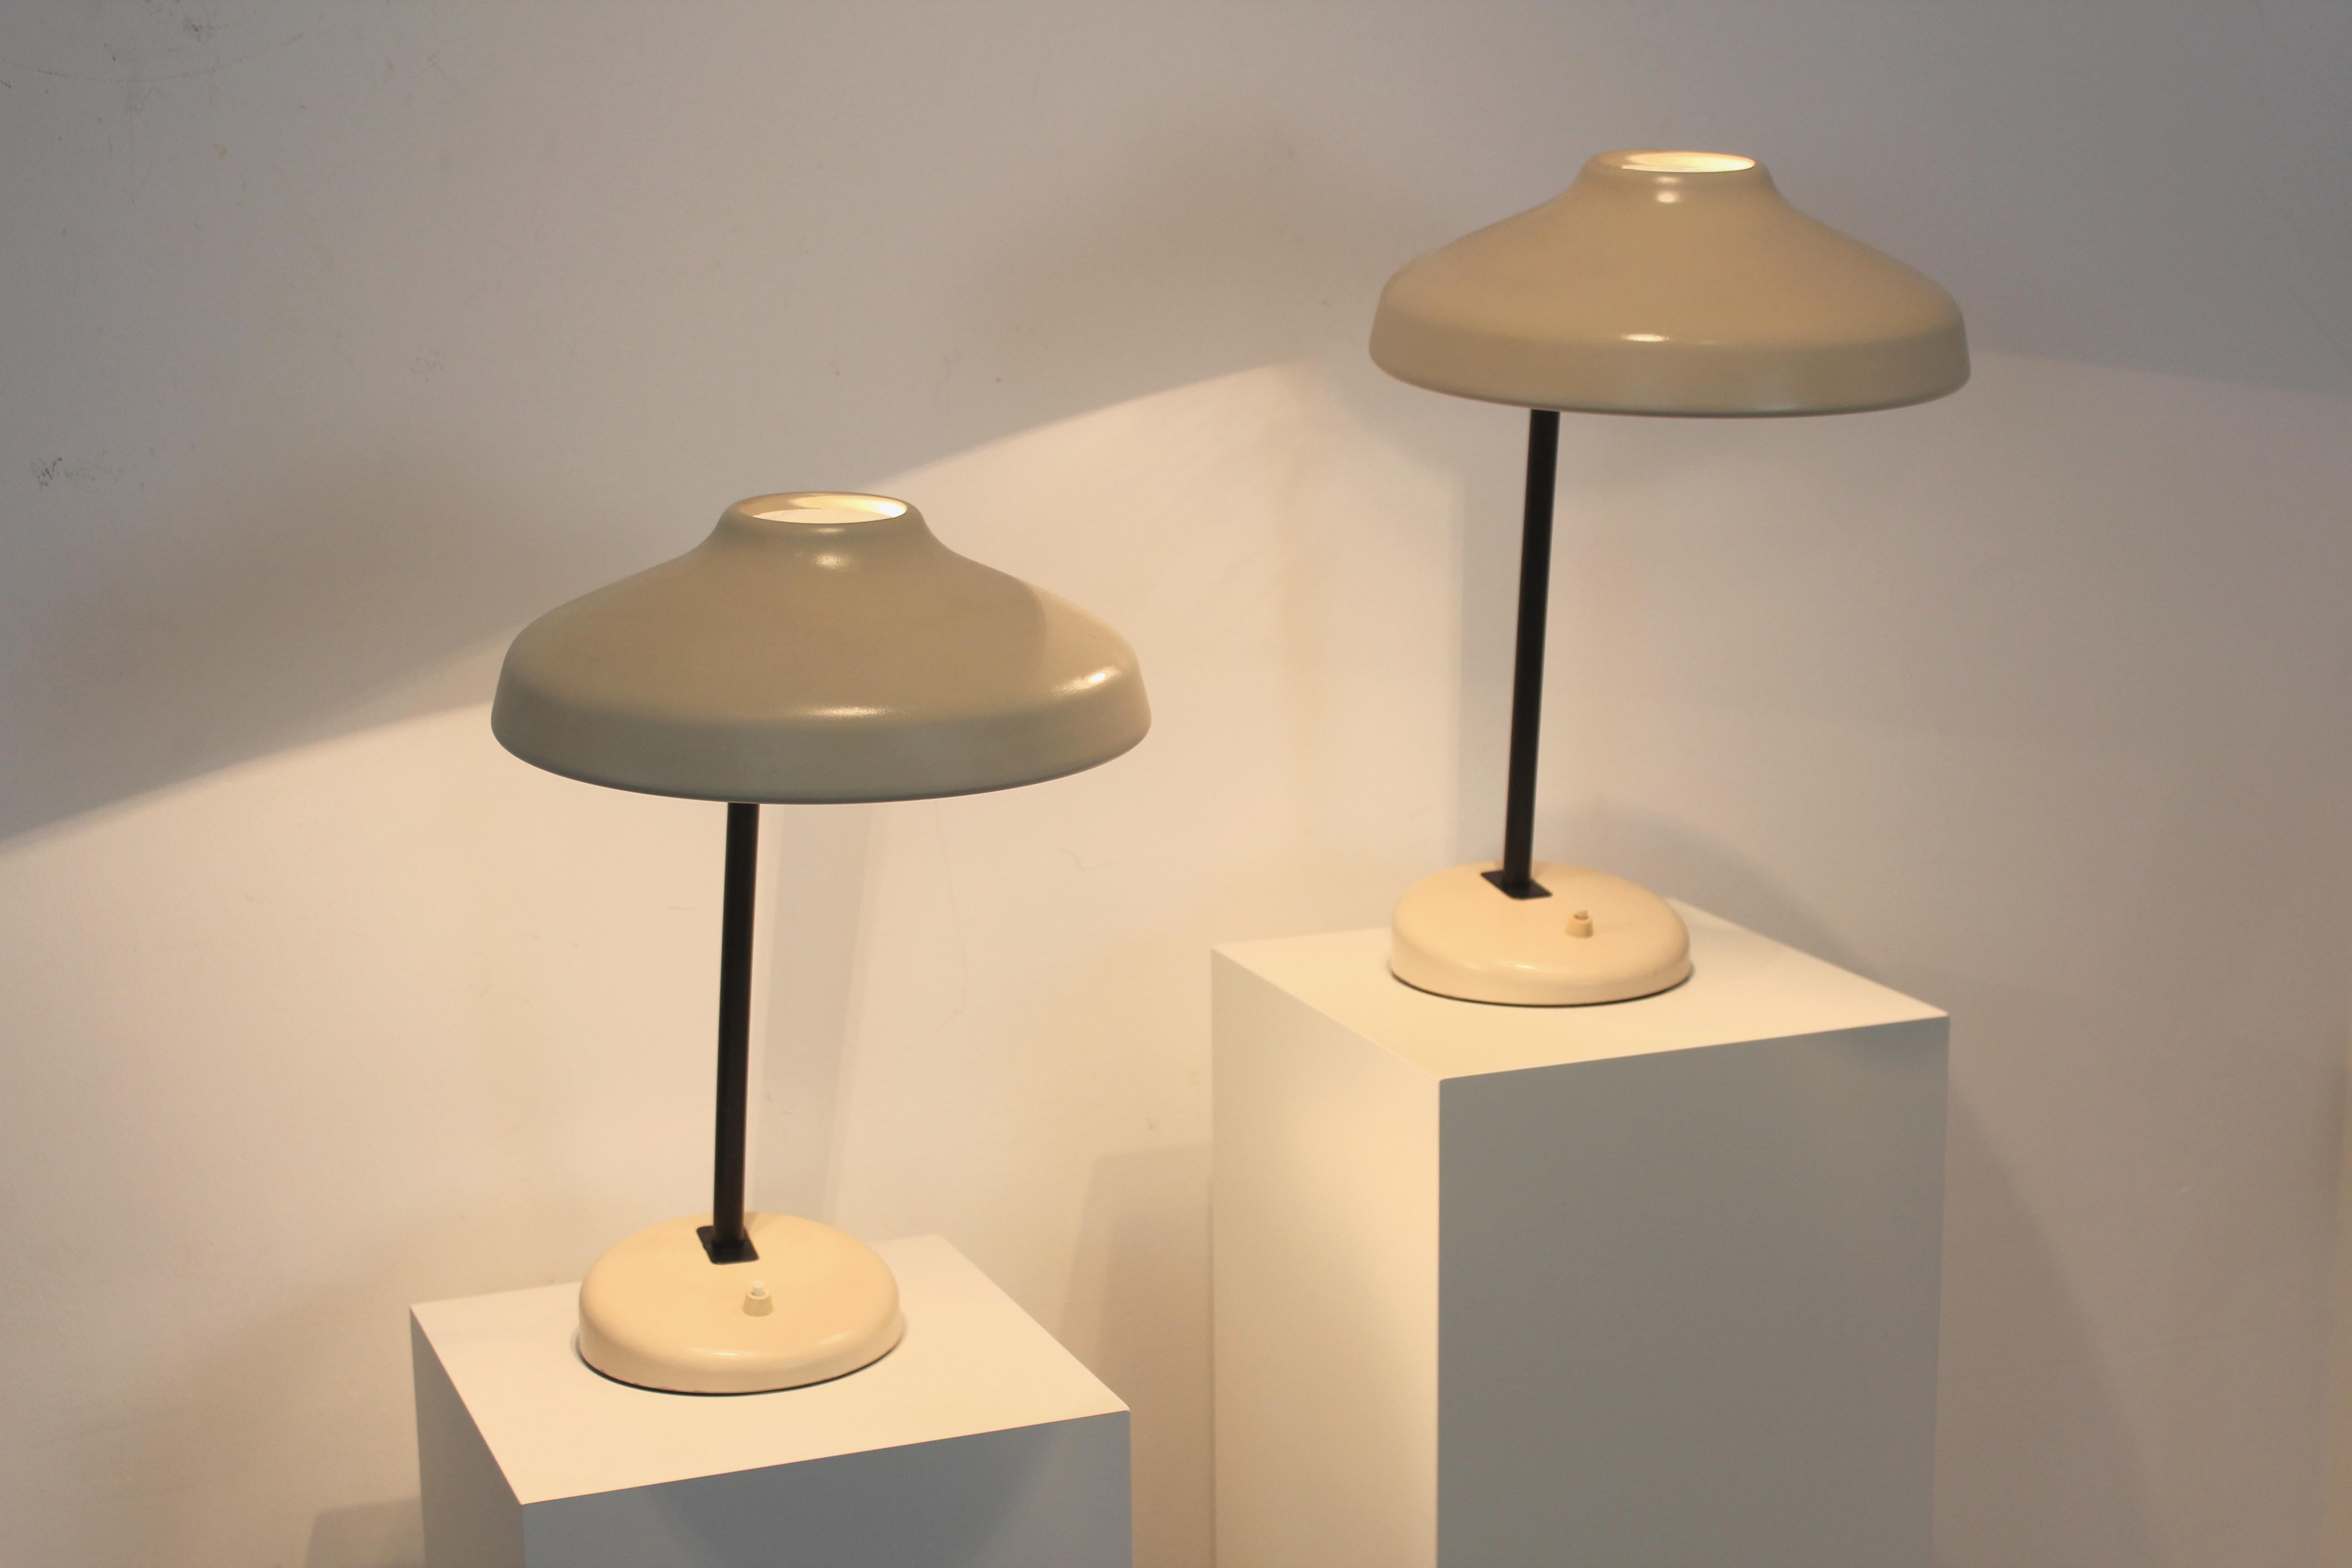 Très joli, pratique et charmant ensemble de lampes de bureau des années 60 fabriqué par Hemi en Suède. Les lampes sont dotées d'une base très solide, combinée à une partie supérieure en forme de 